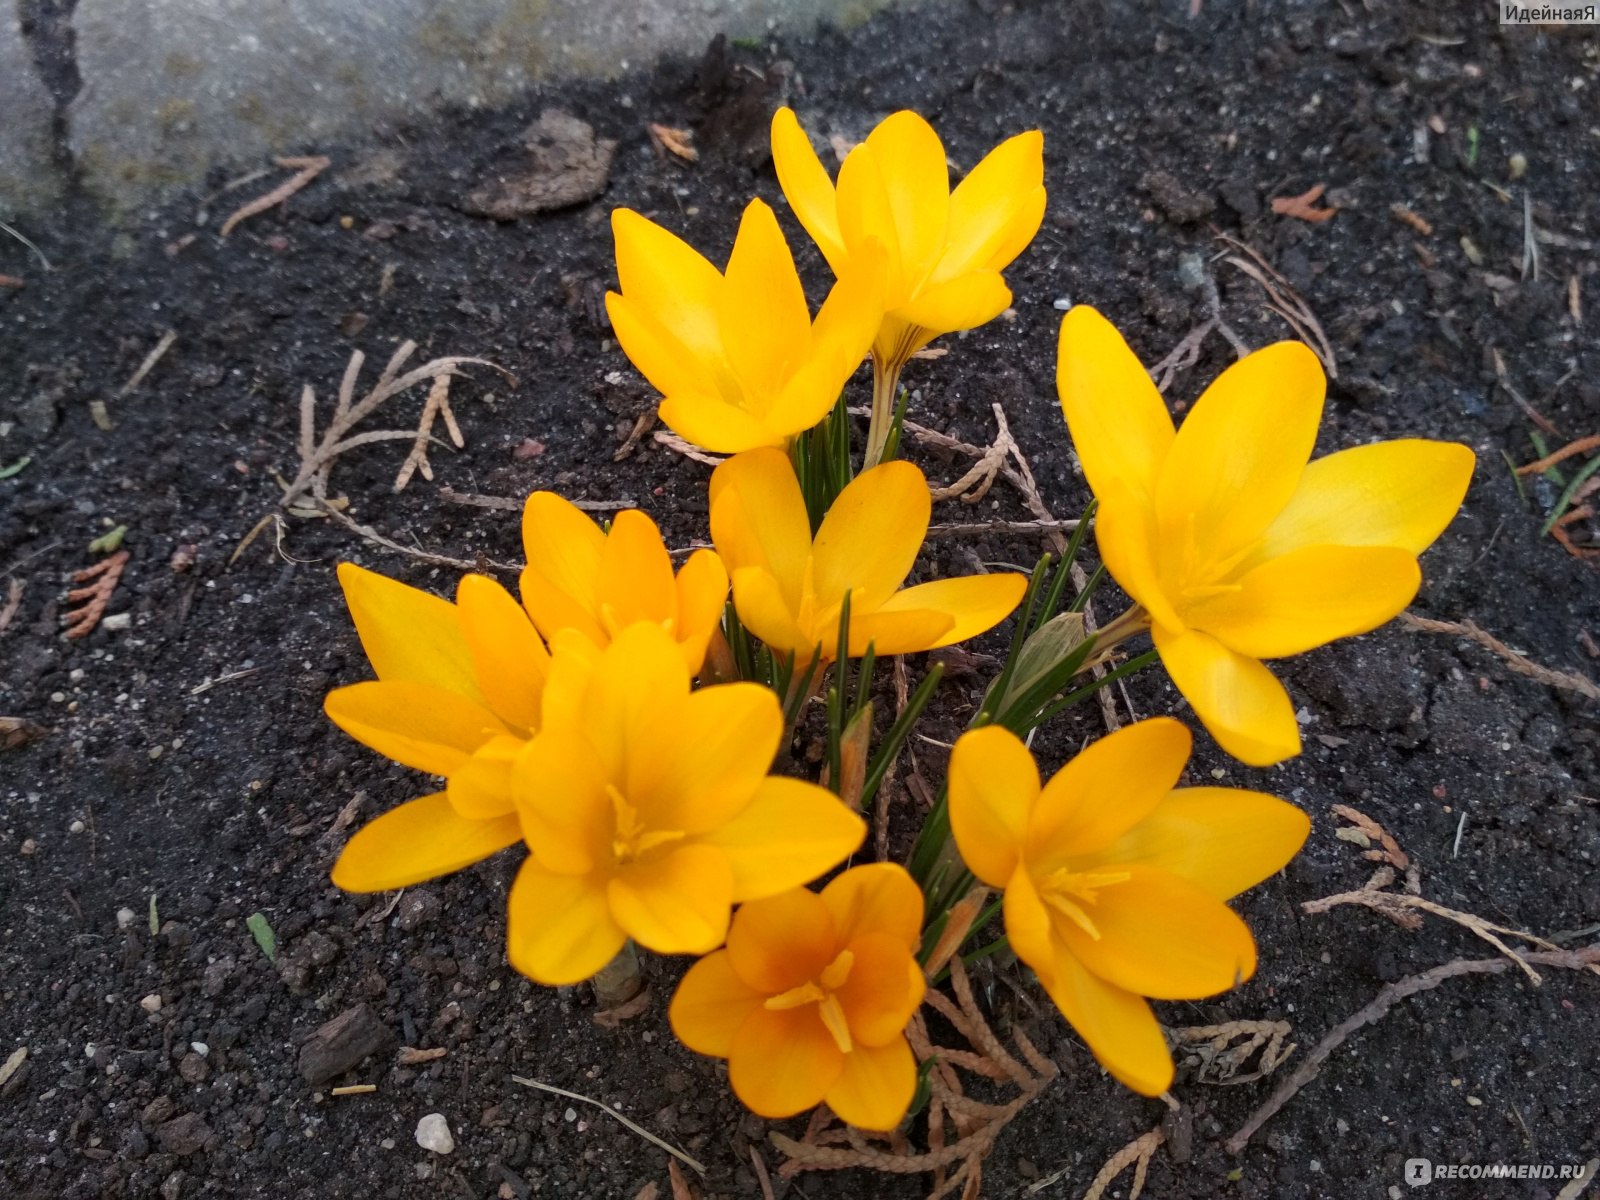 Весенние цветы мелколуковичные желтые